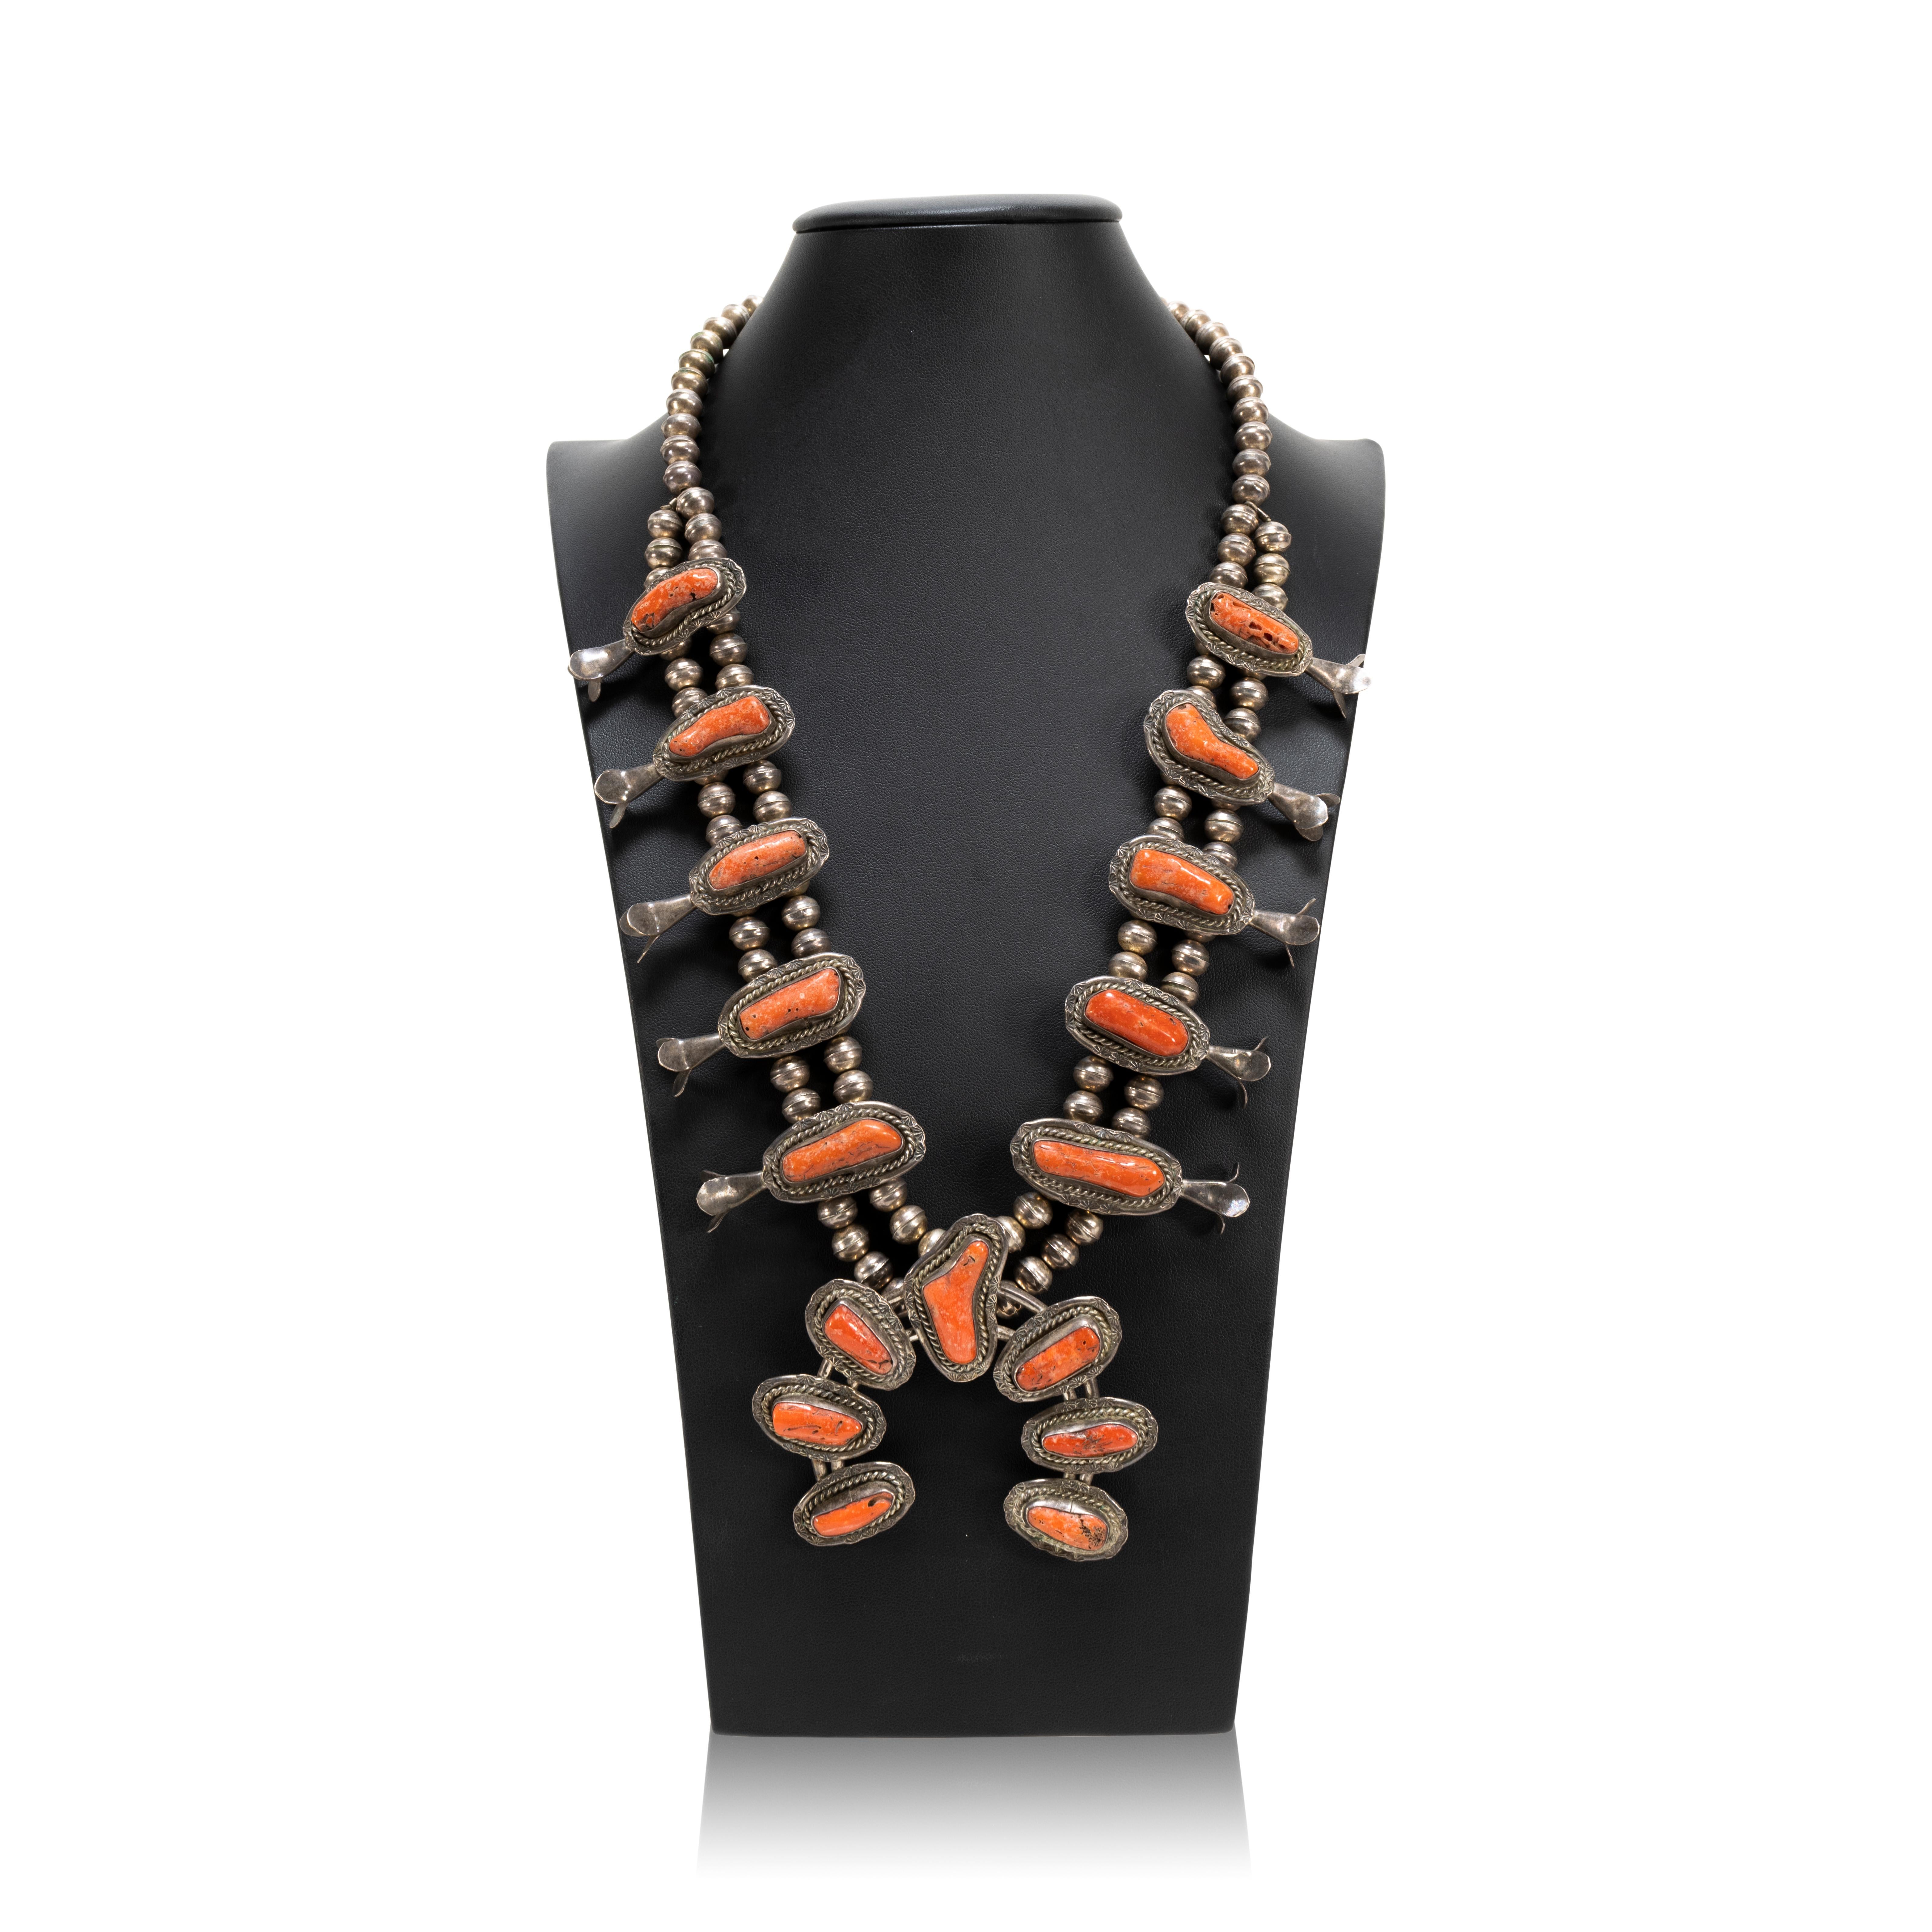 Navajo-Korallen- und Sterlingsilber-Kürbisblüten-Halskette mit einer klassischen Naja mit sieben schönen Korallen-Cabochons, akzentuiert durch ein gedrehtes Seil und leichte handgeprägte Designs. Die Blütenblätter entlang des Halses sind mit